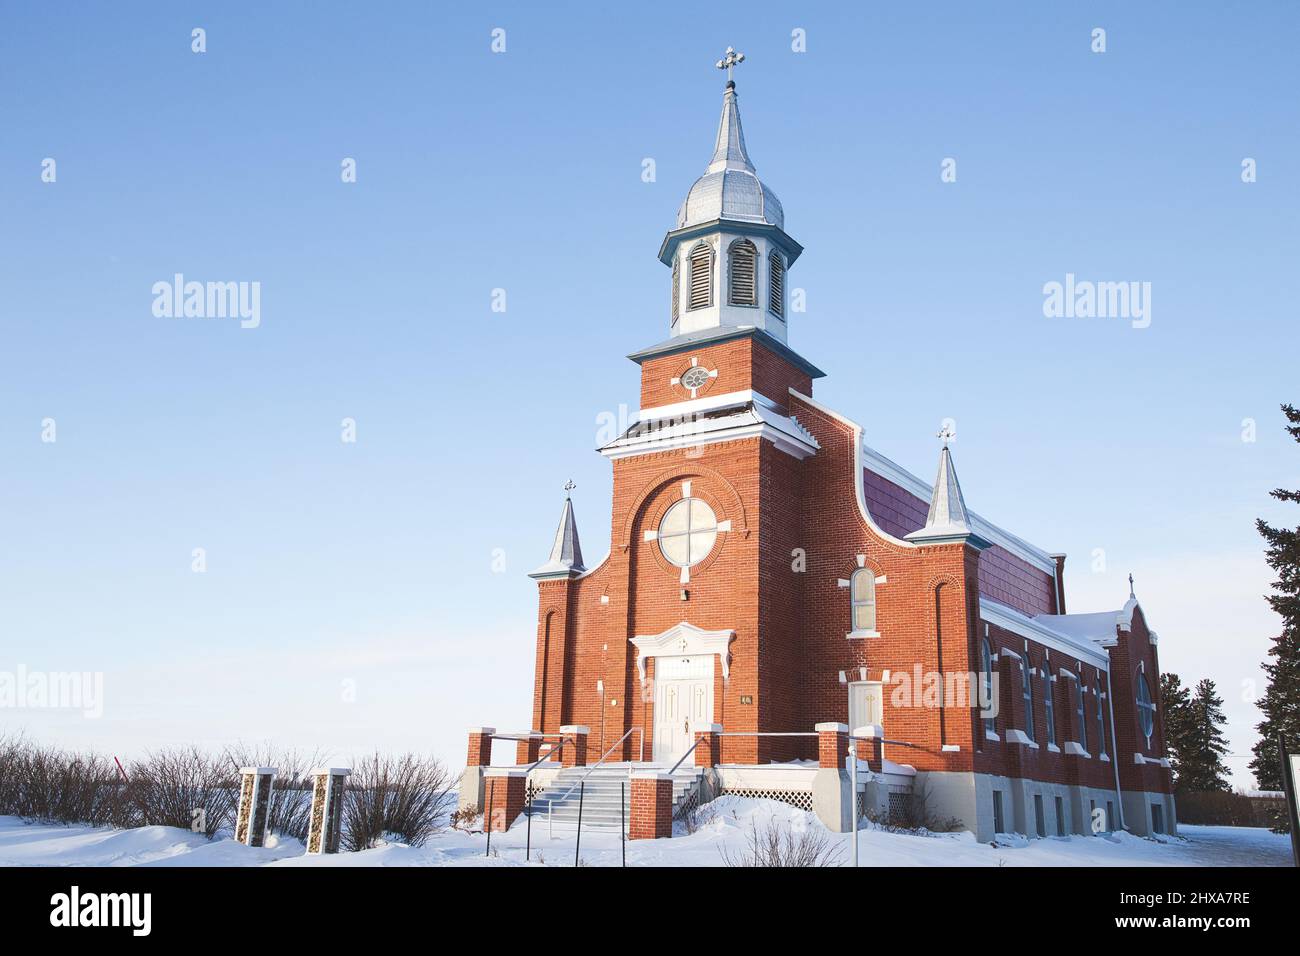 Église catholique de Saint-Norberts-Roamn dans un paysage rural d'hiver Banque D'Images